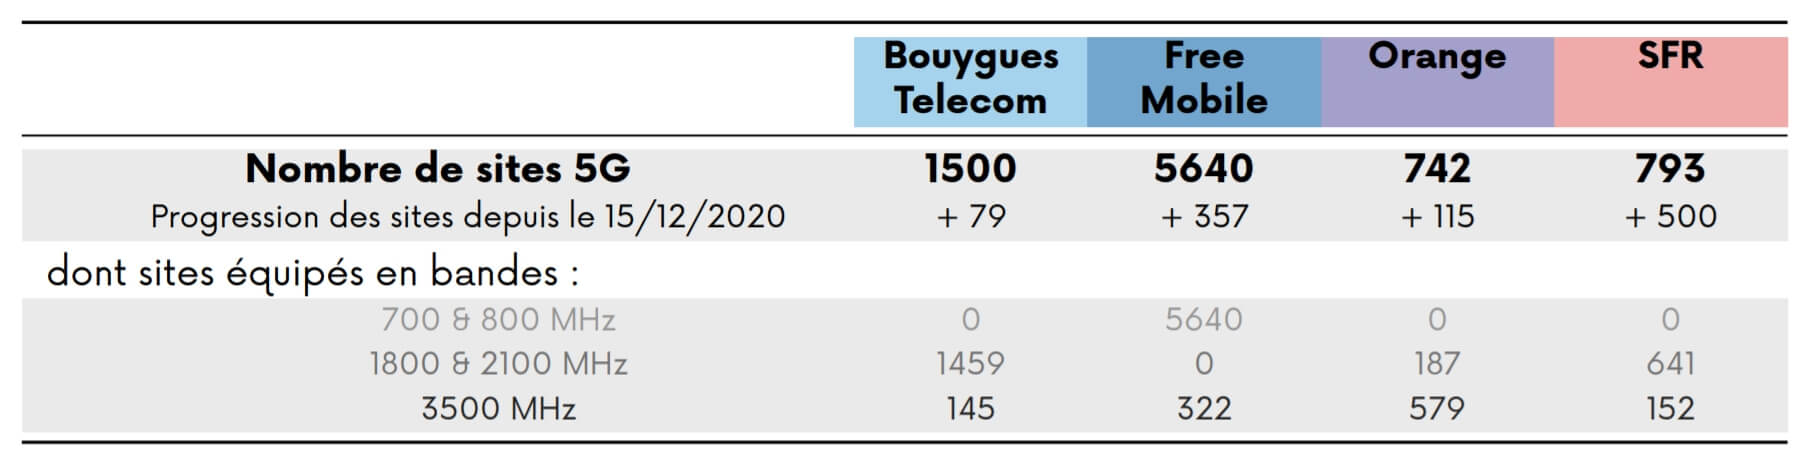 Déploiement de la 5G par Orange, SFR, Bouygues et Free en janvier 2021